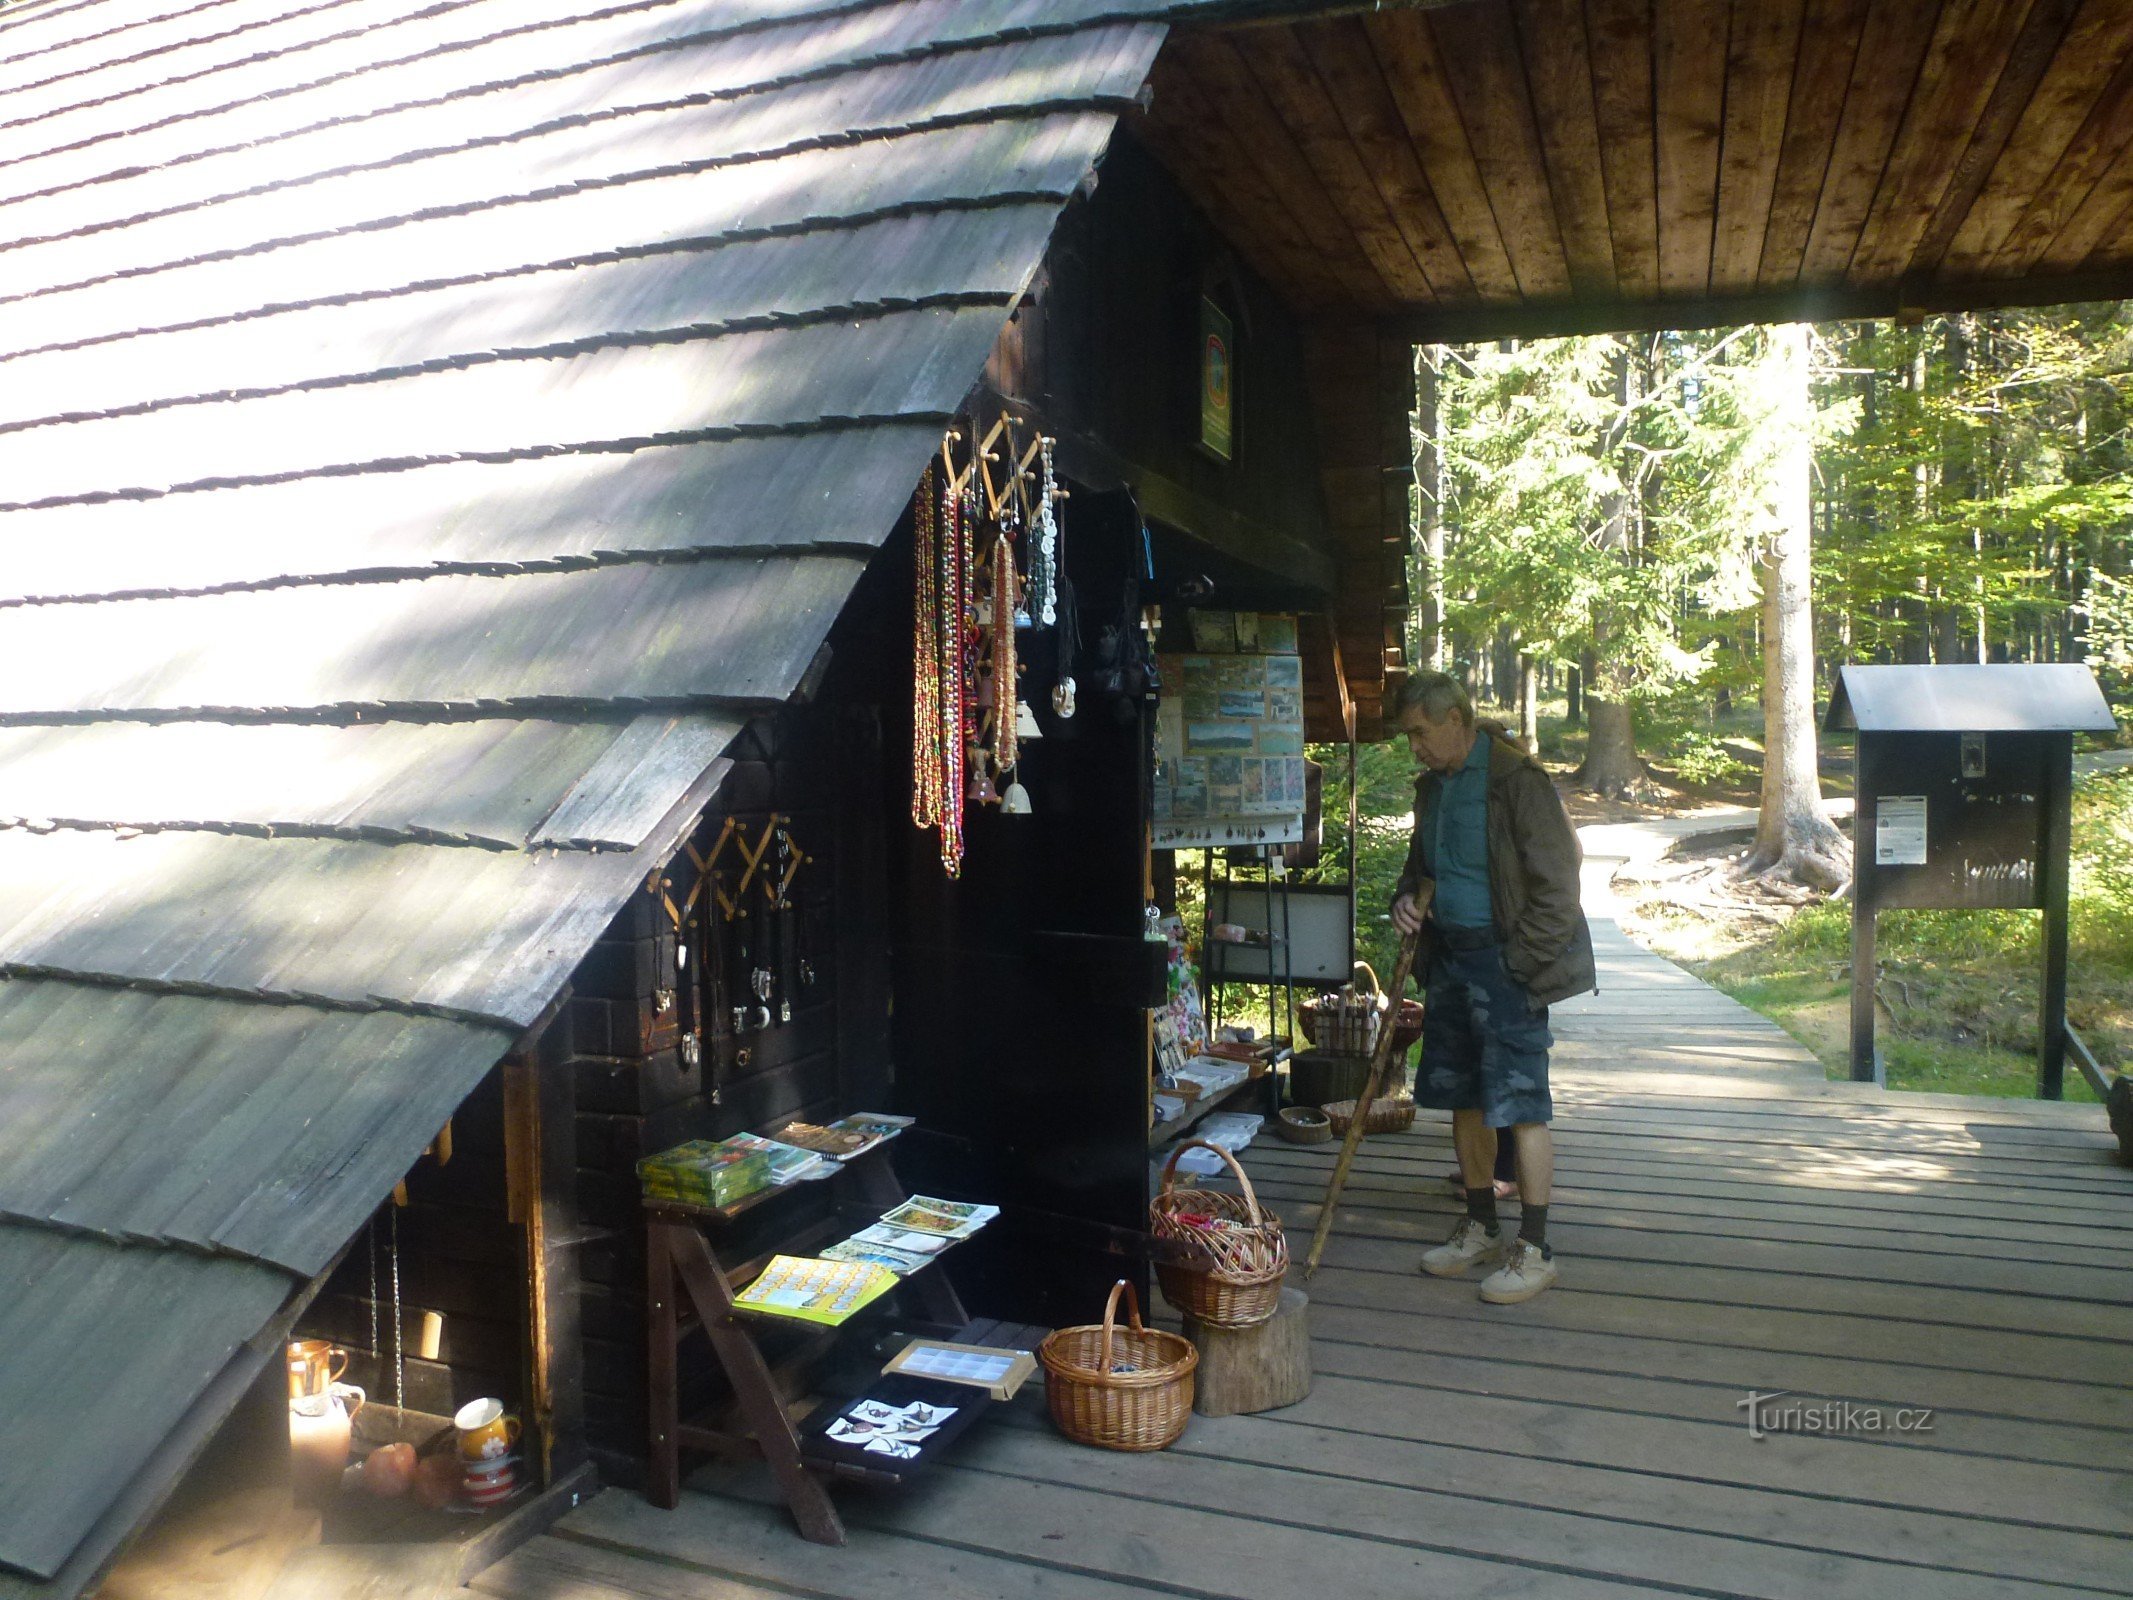 Drewniana chatka, w której oprócz biletów turyści mogą kupić szereg pamiątek